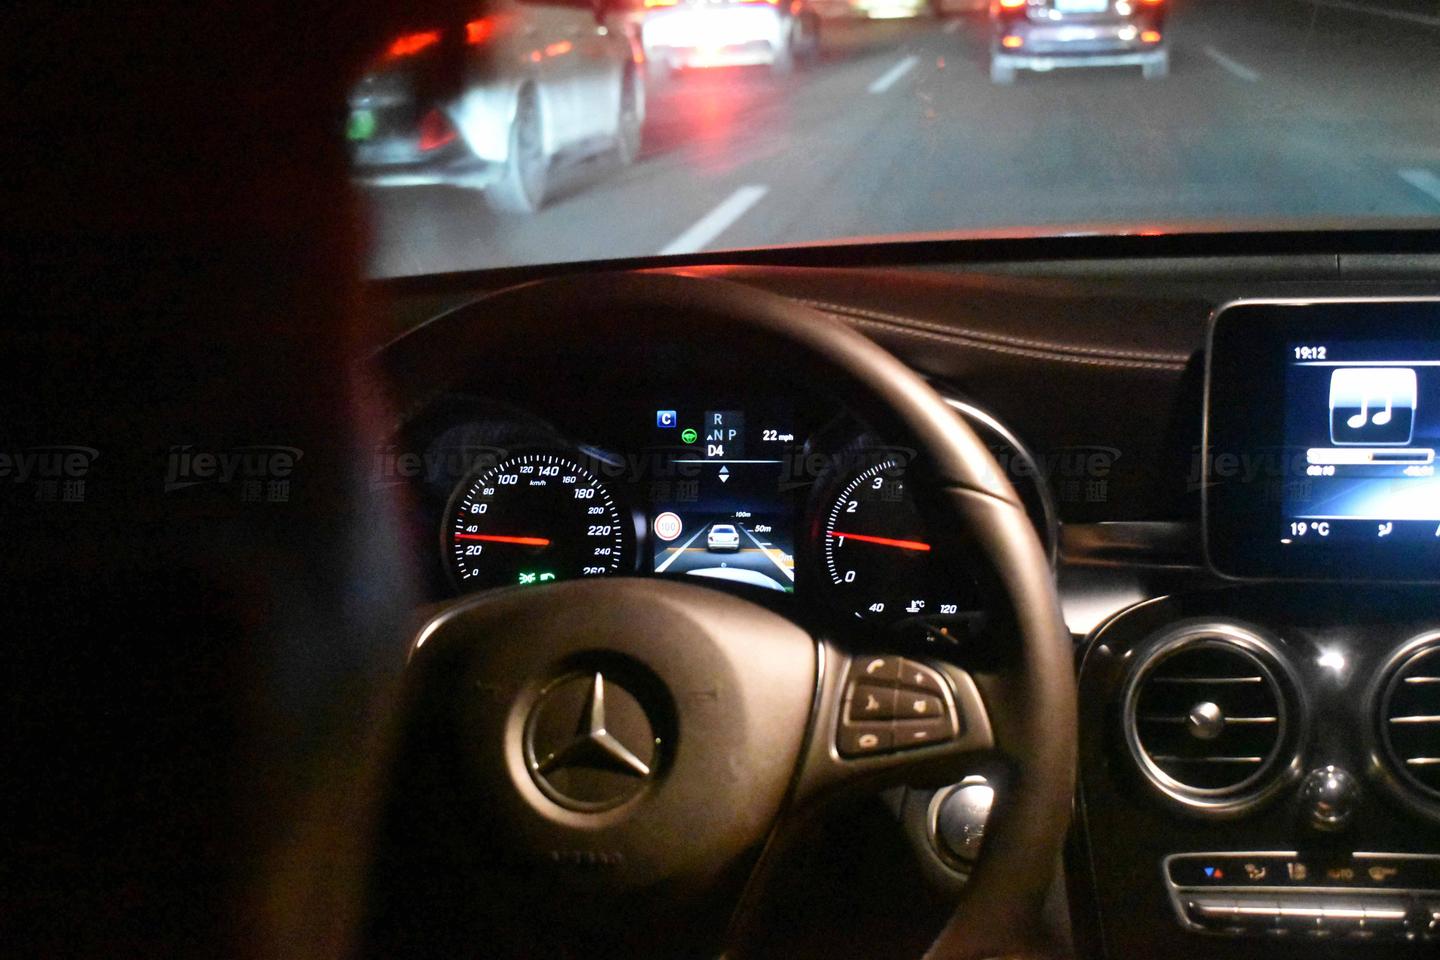 奔驰glc增配23p驾驶辅助系统,智能开车更轻松更安全